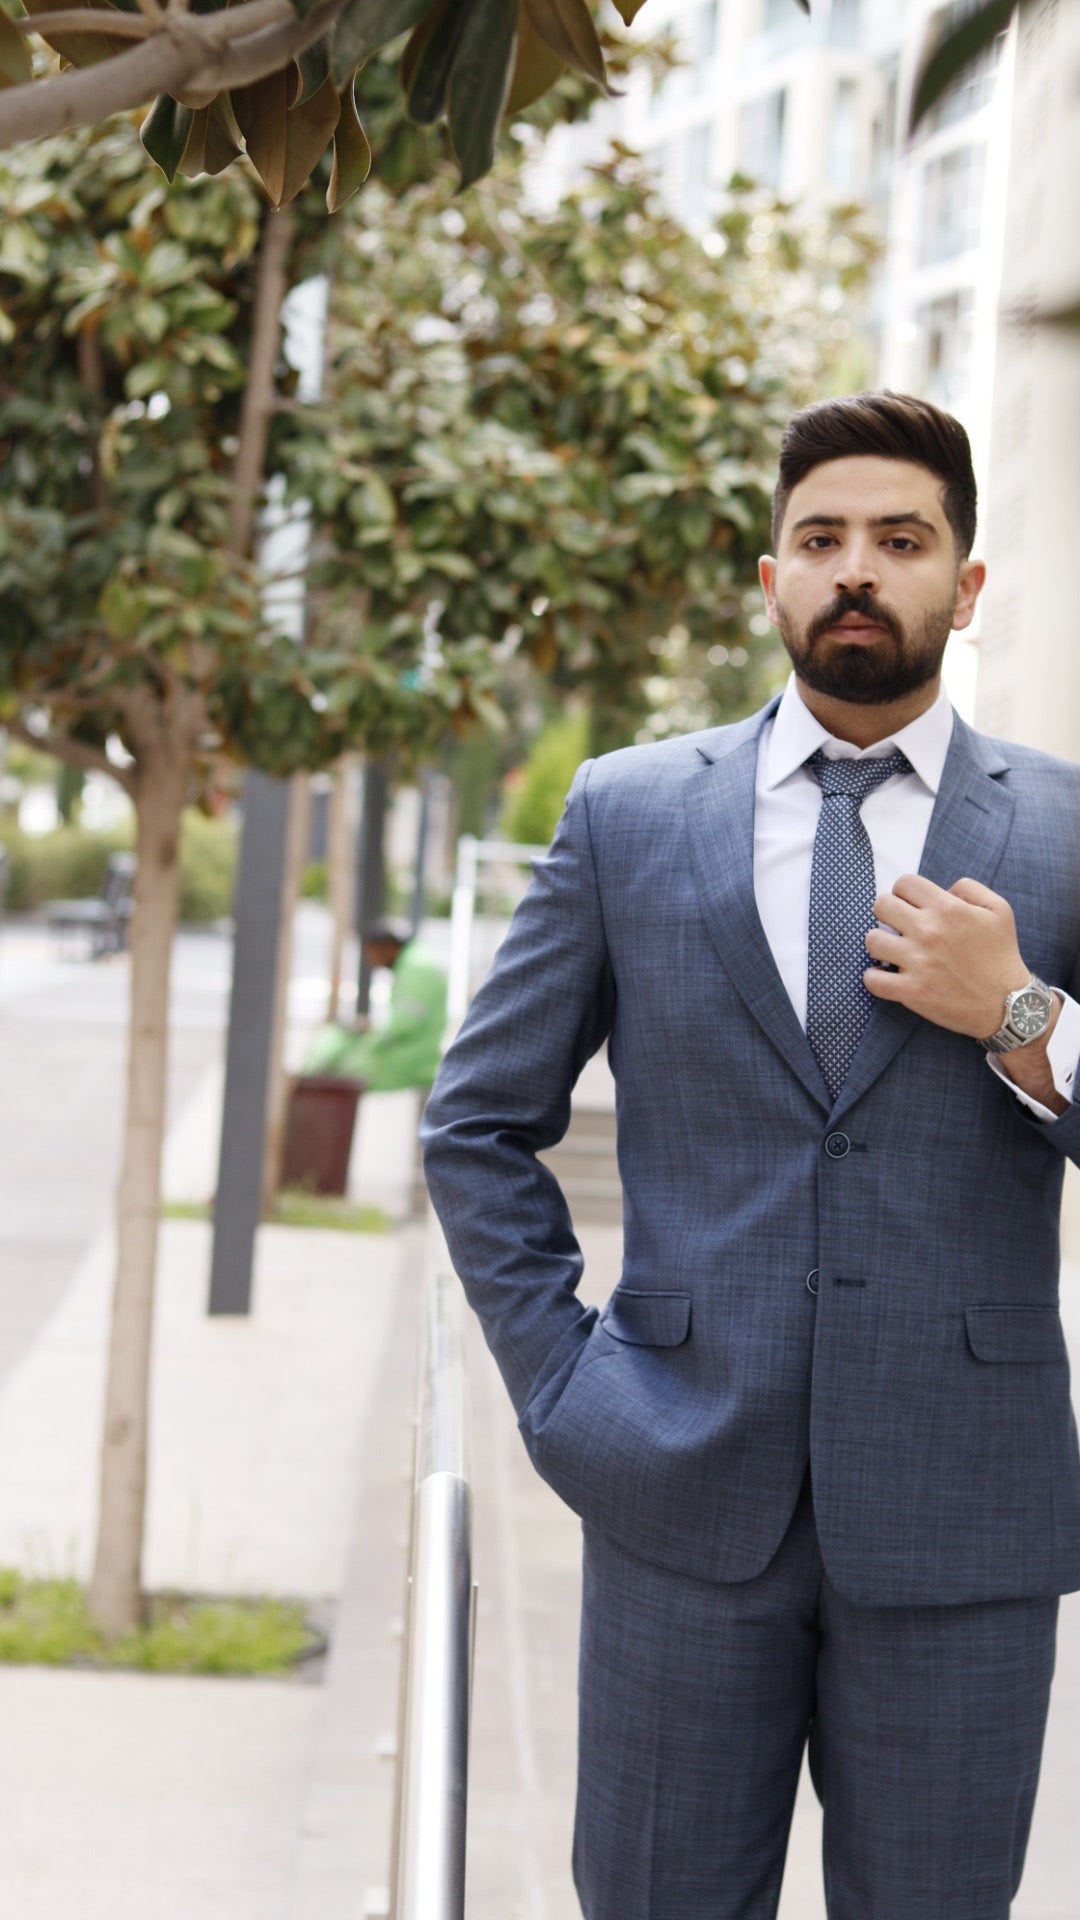 The Deal Breaker Suit - High Quality Men's Suit